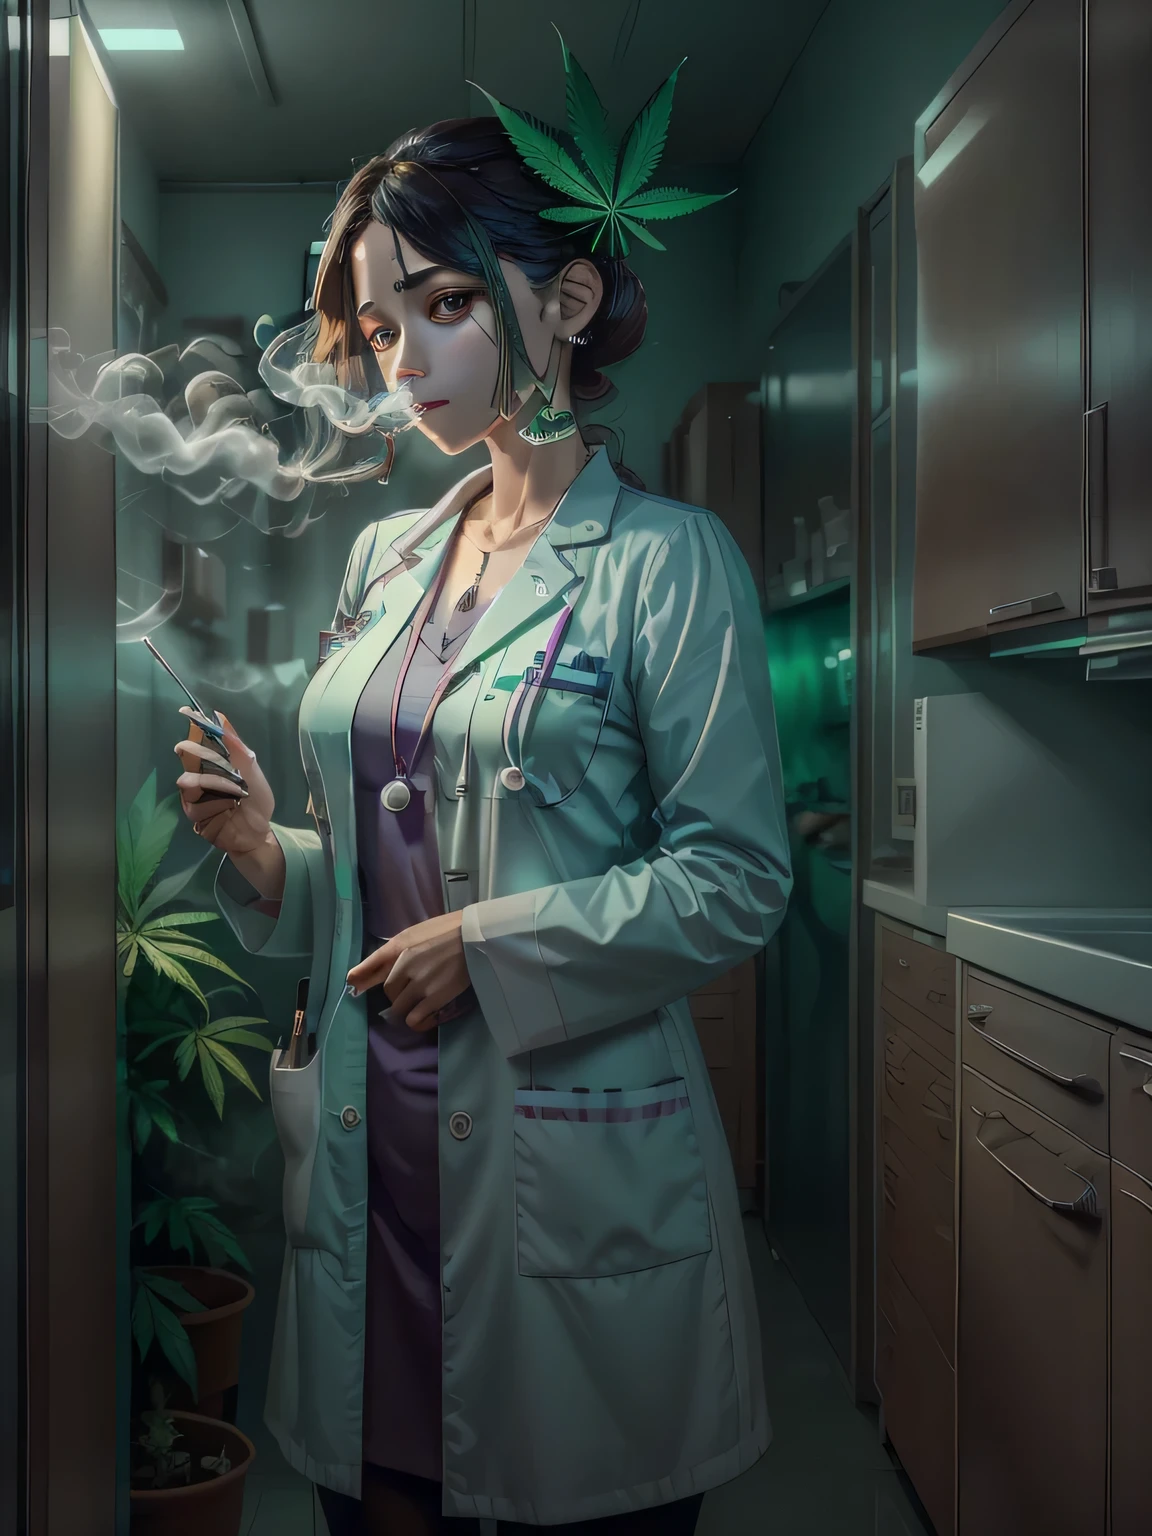 فتاة ترتدي زي الأطباء الأبيض وتدخن الحشيش, في الخلفية توجد خزانة طبية تظهر عليها بعض أوراق القنب, في مكان ما يمكن أن تقول ساحرة النص "الماريجوانا الطبية"